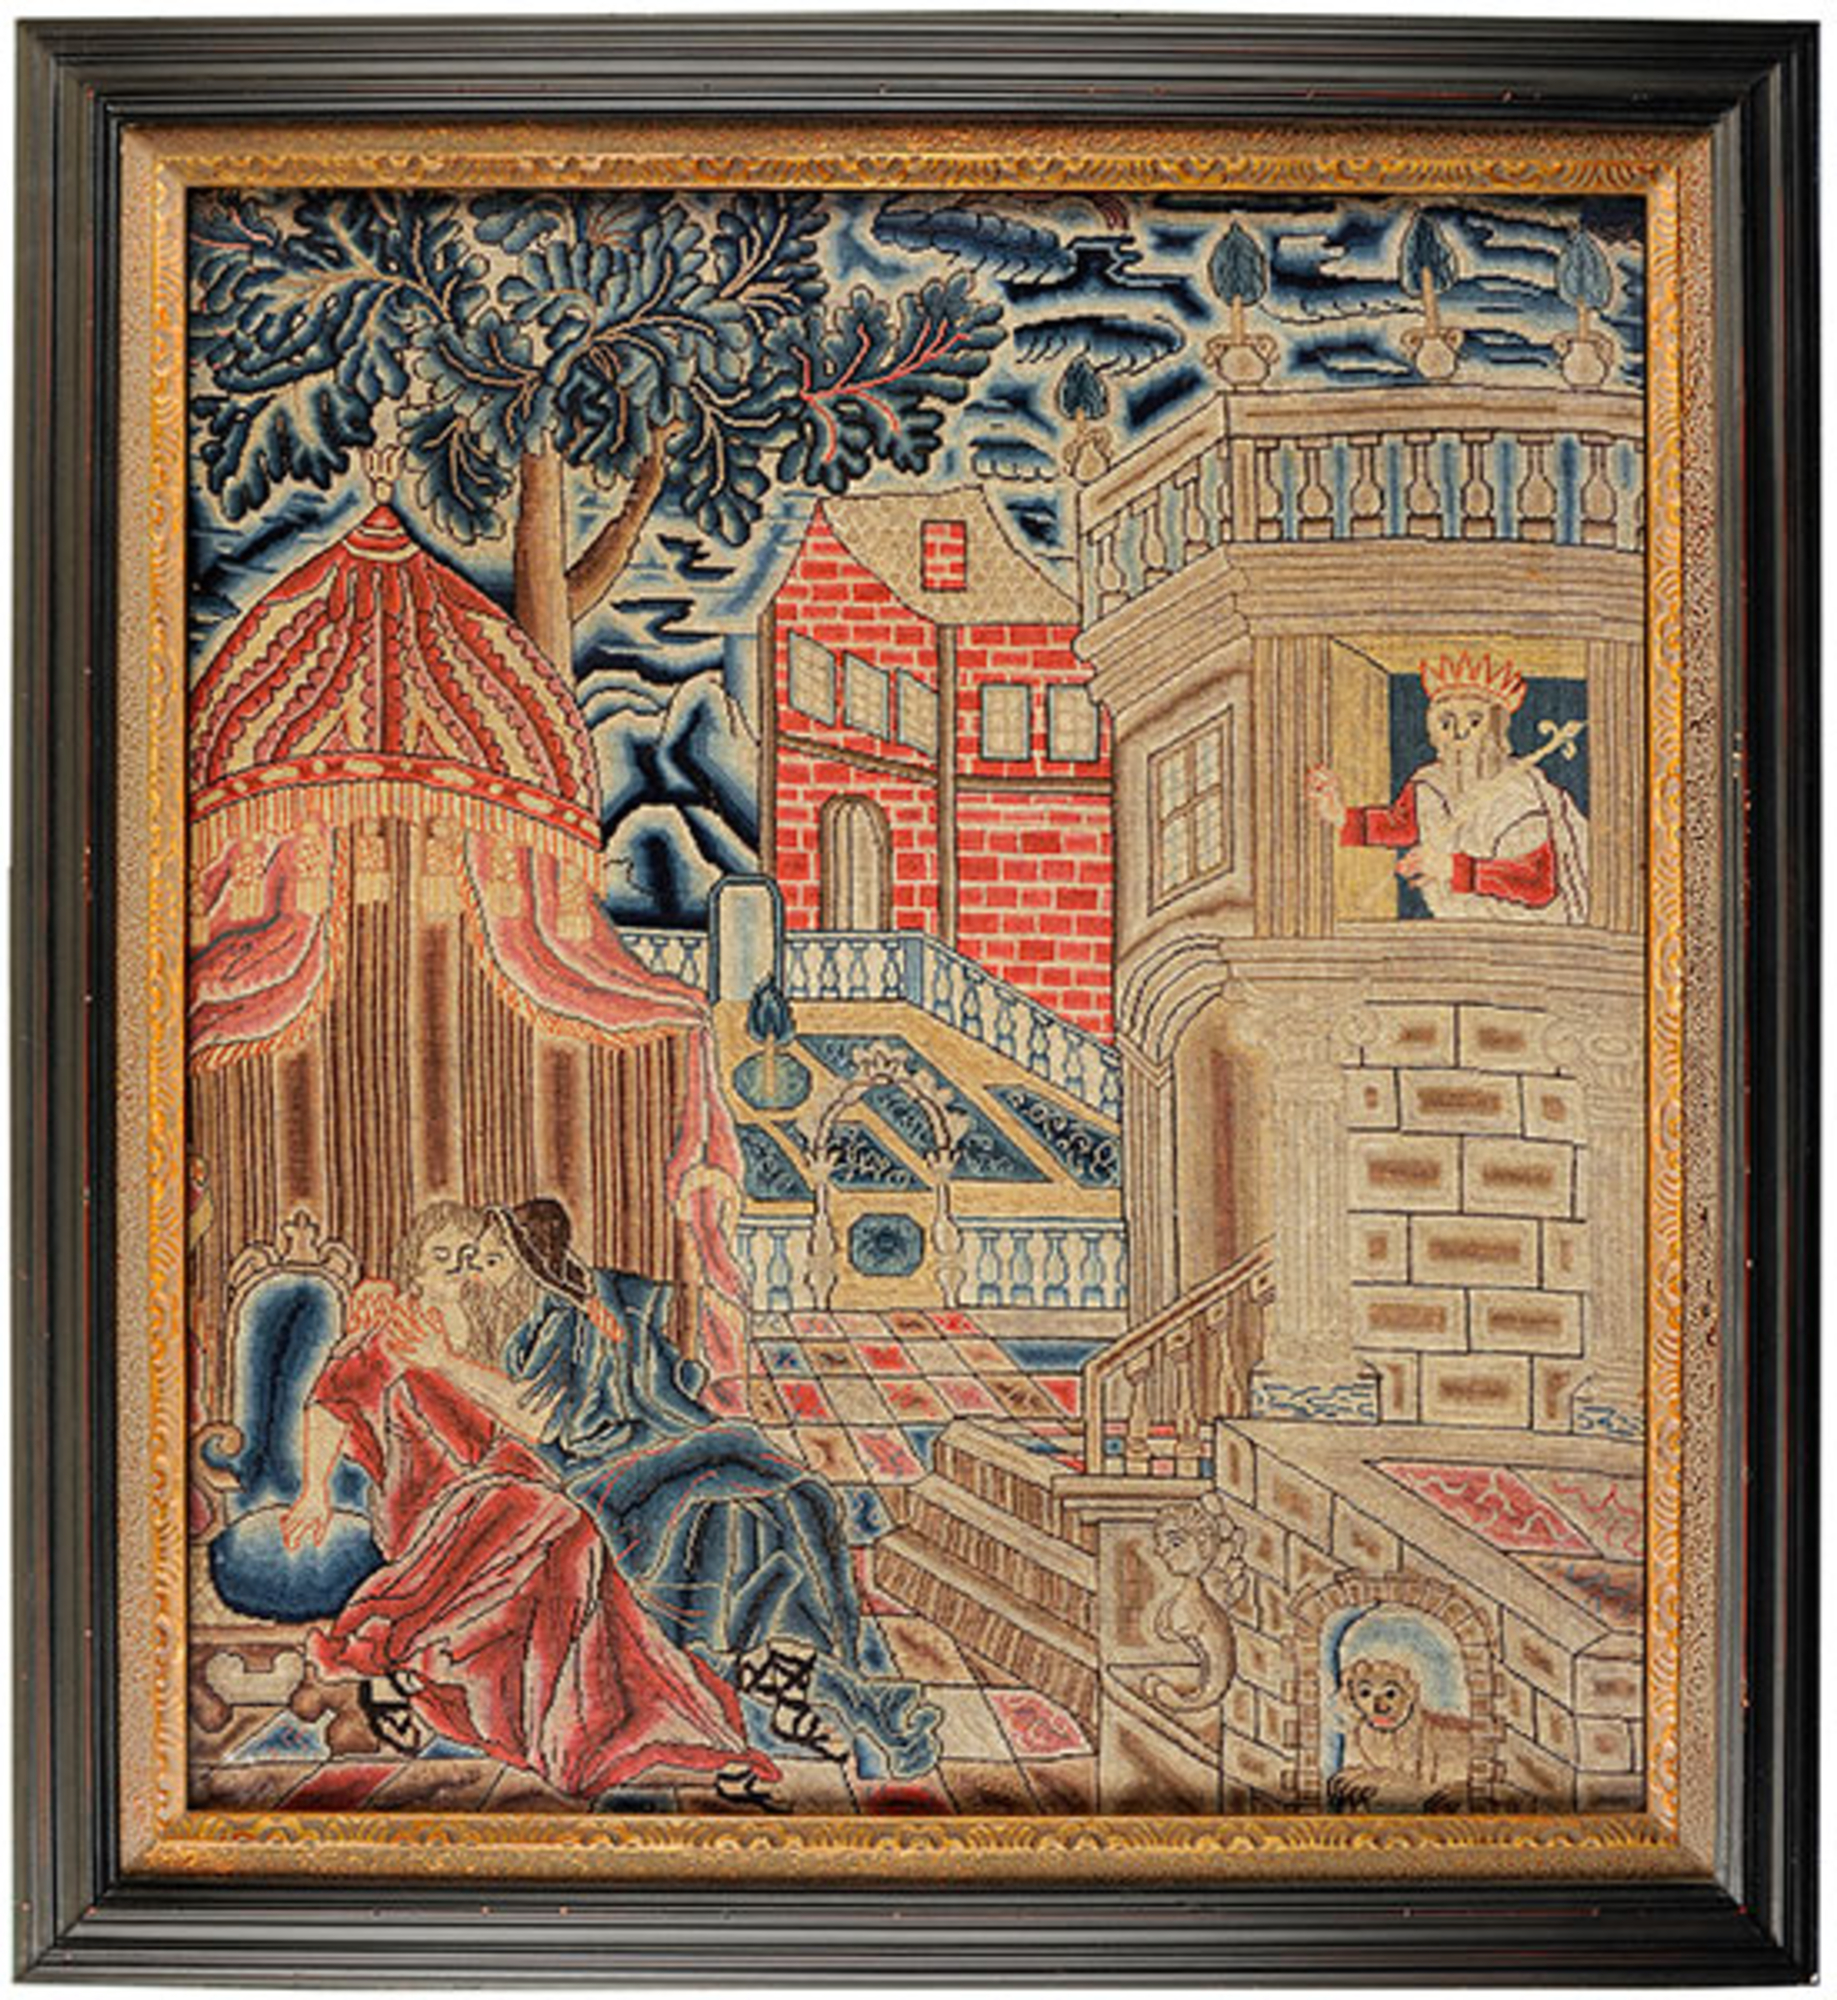 Panel depicting King David and Bathsheba